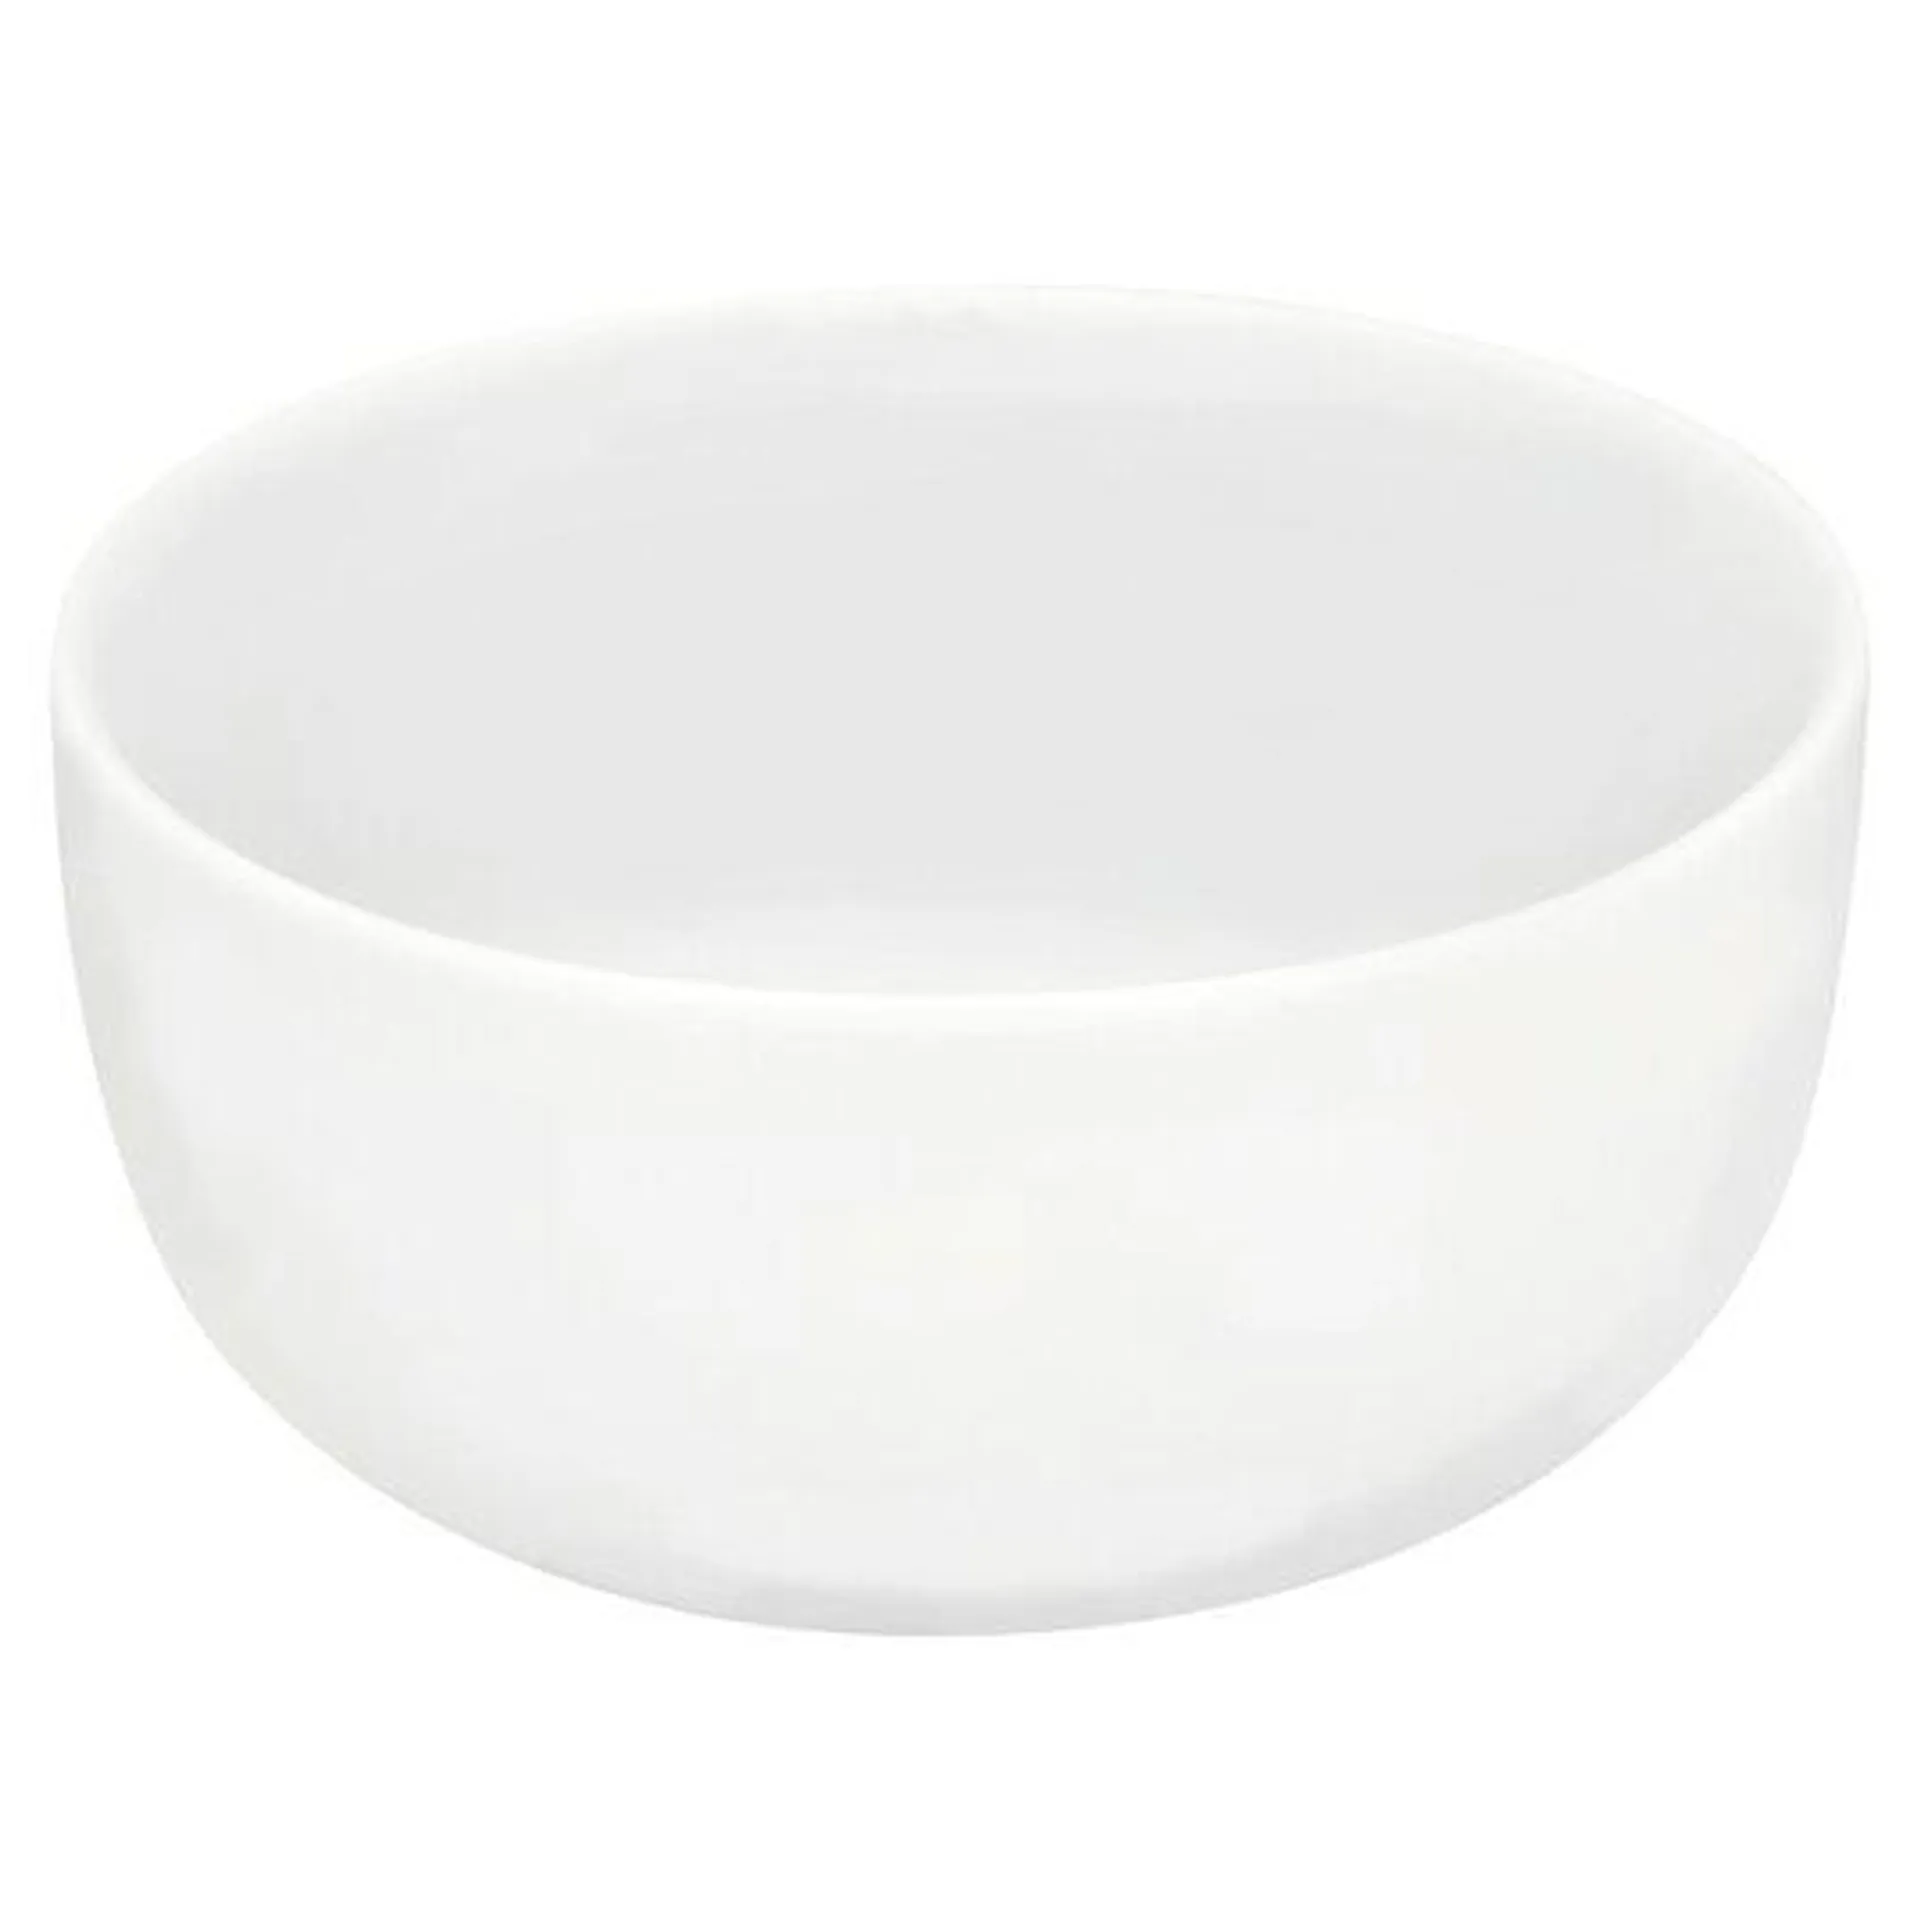 Tesco Nova Porcelain Cereal Bowl